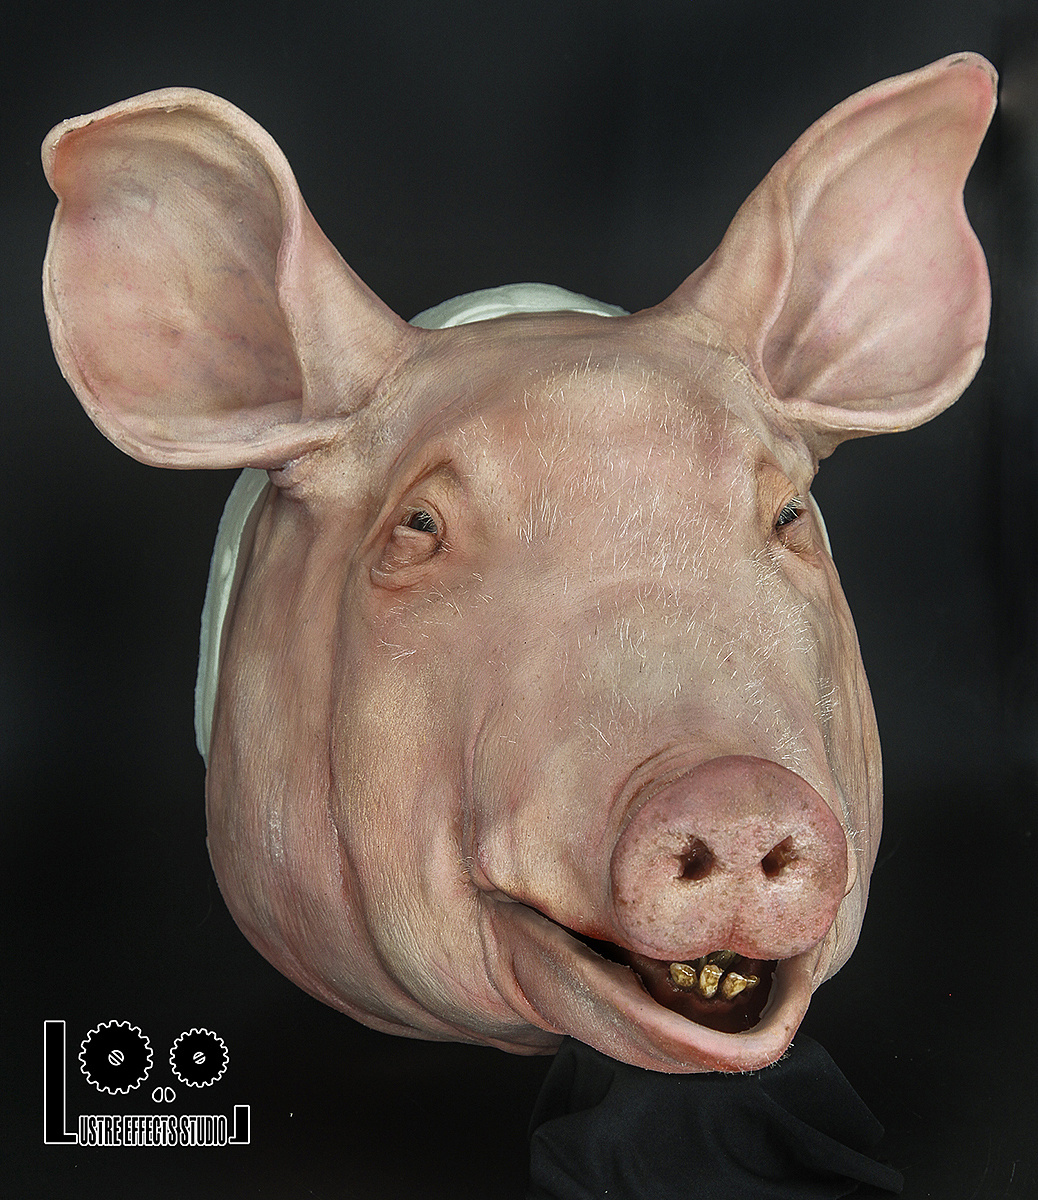 猪肉解剖图片大全,猪肉分解图高清大图 - 伤感说说吧